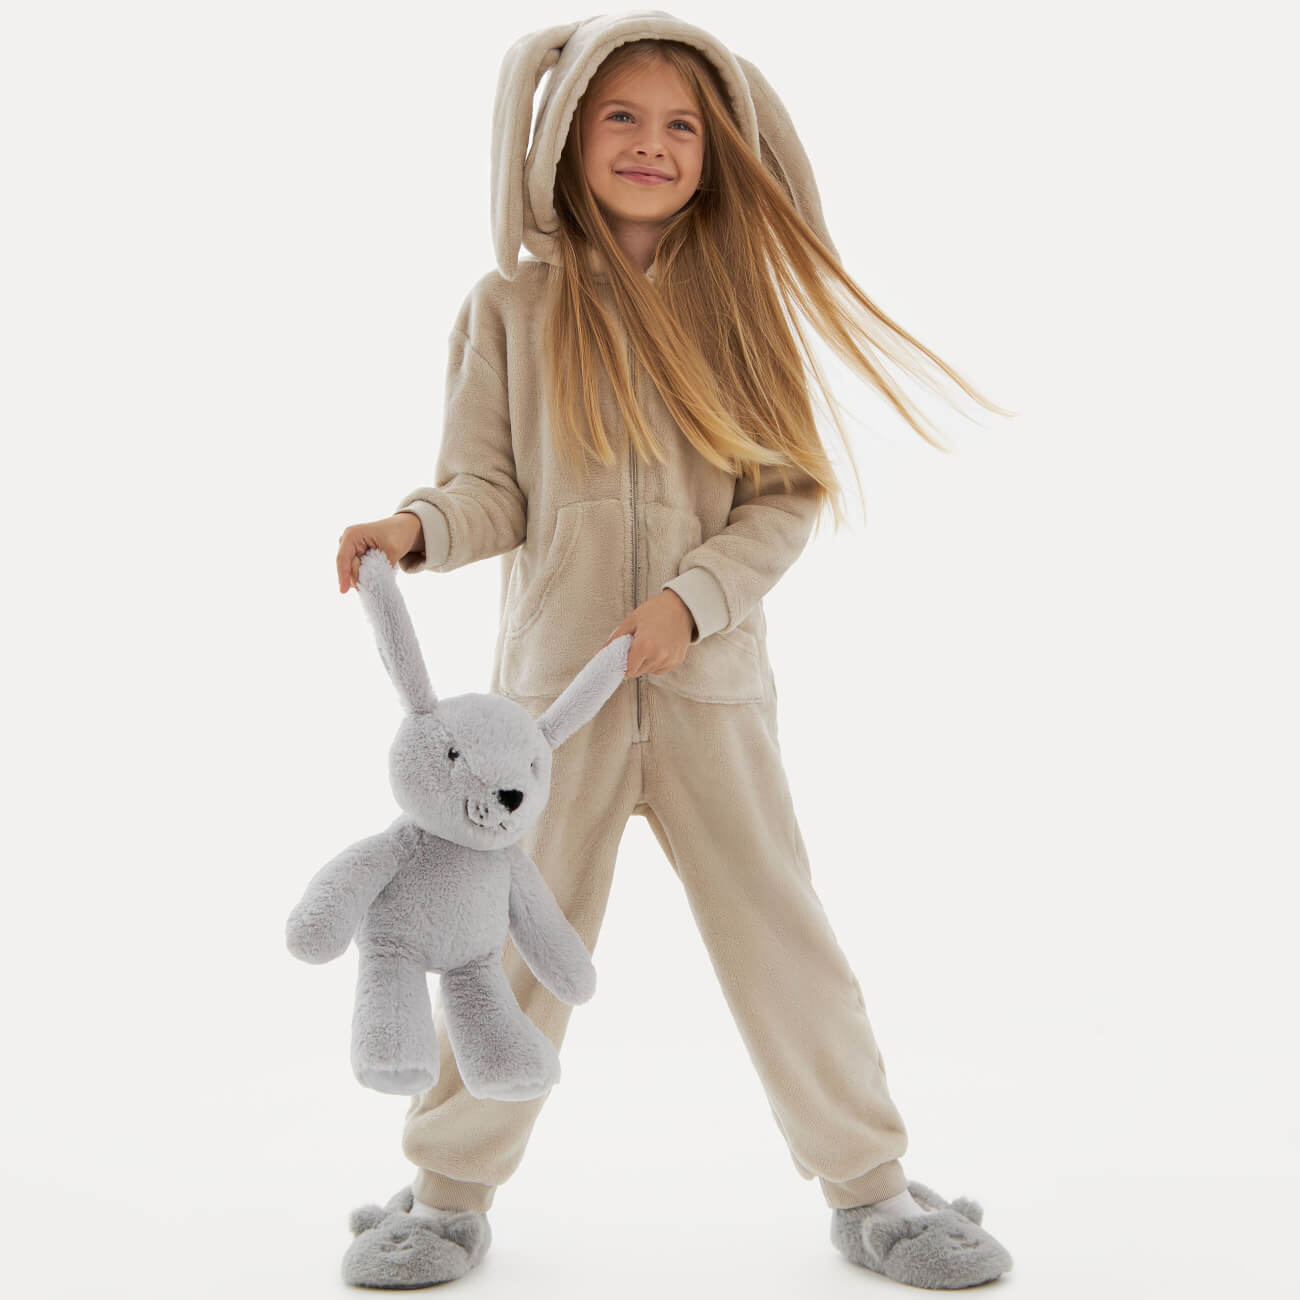 Комбинезон детский, домашний, 134-140 см, с капюшоном, флис, серый, Кролик, Annie